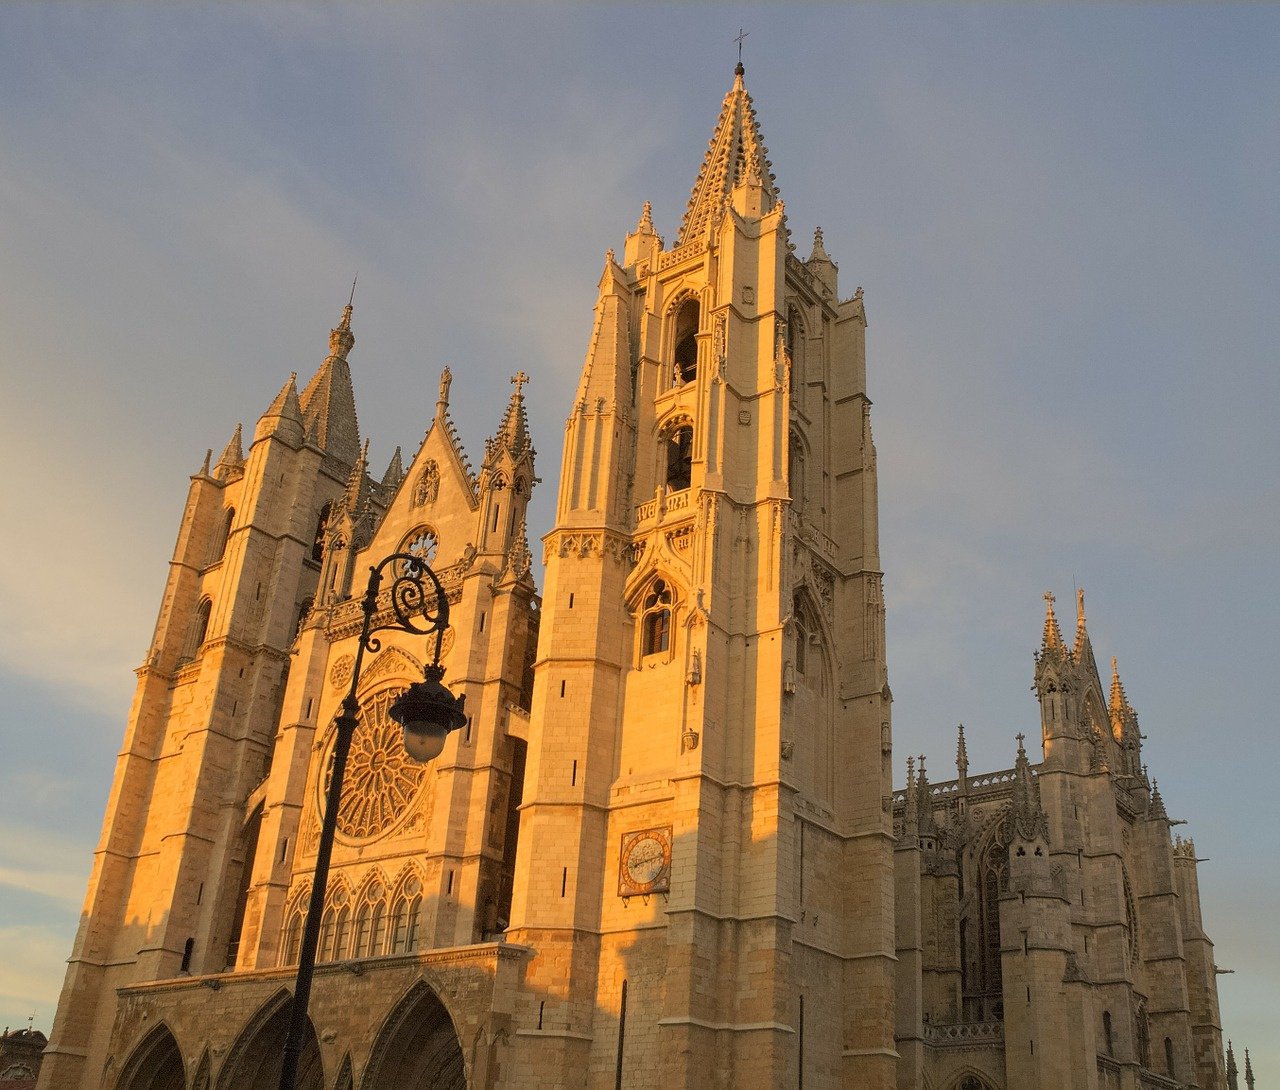 Catedral de León.jpg